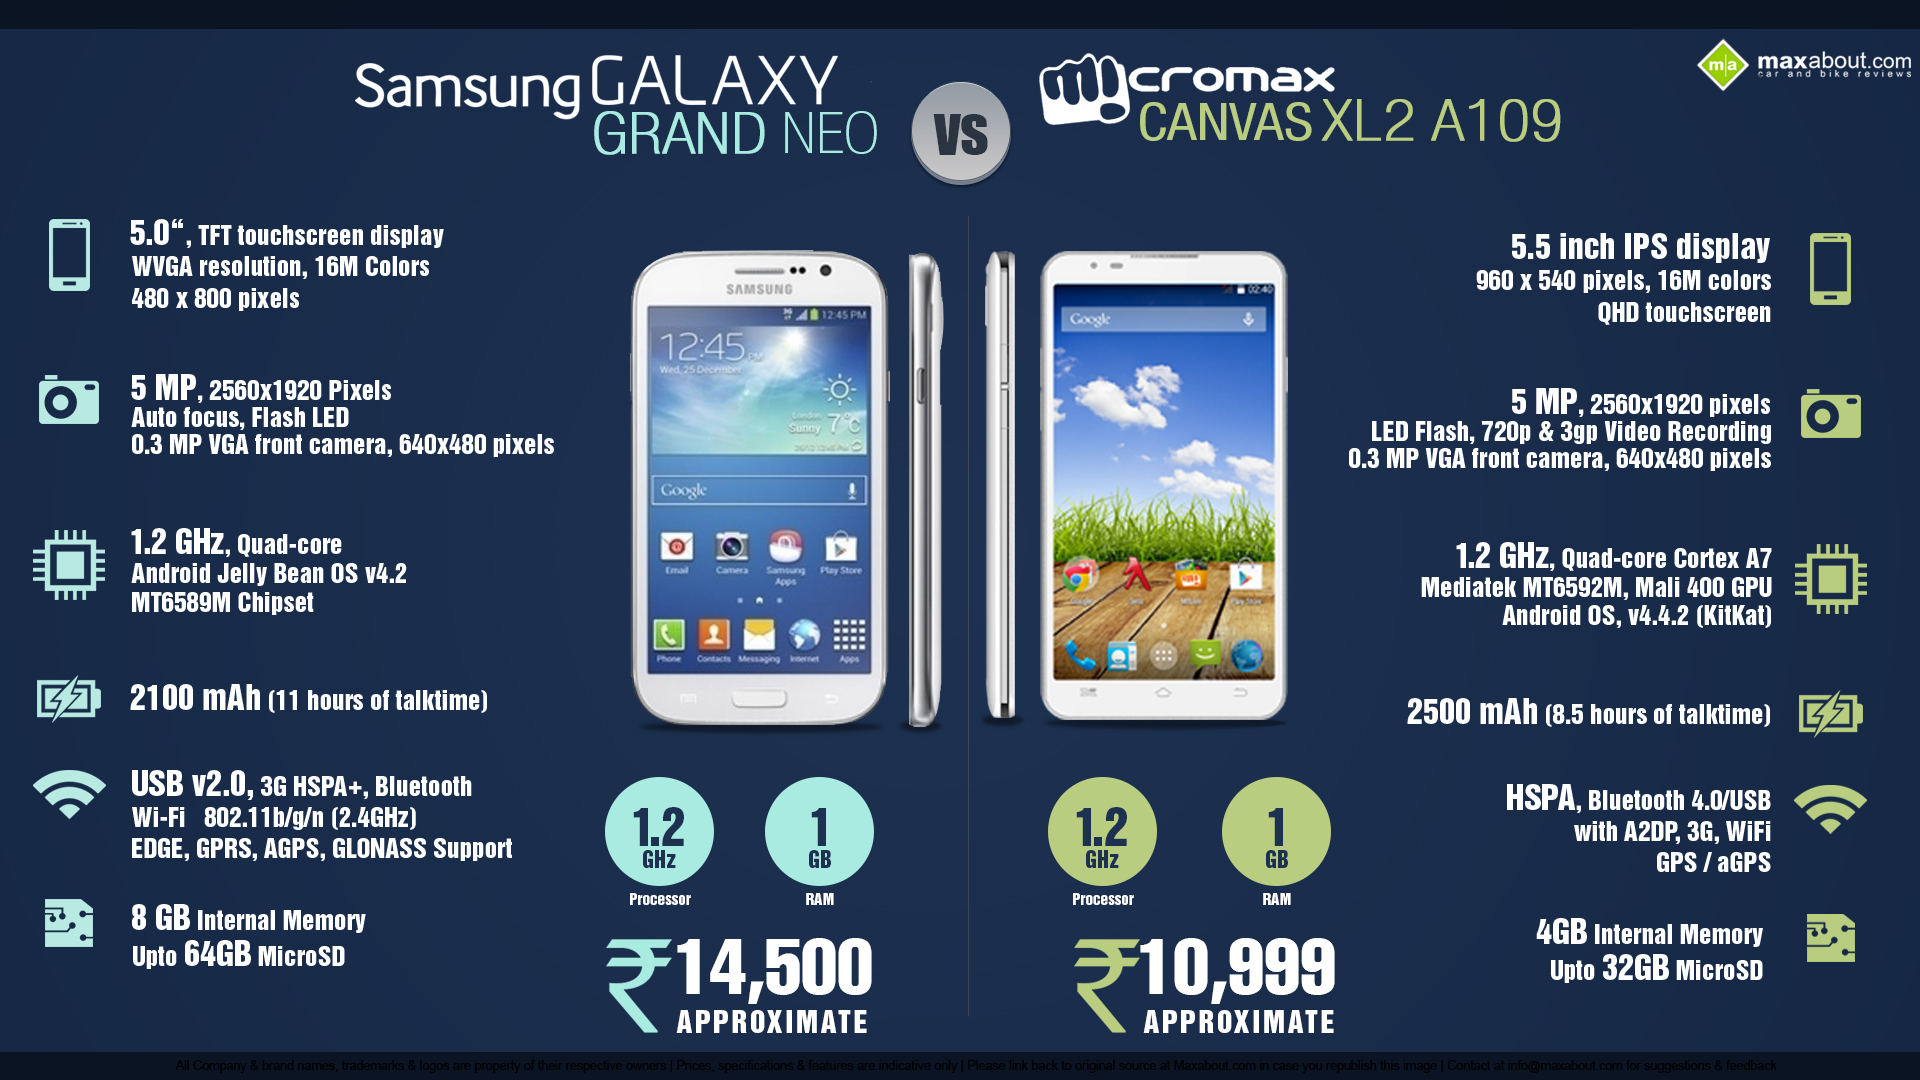 Micromax Canvas XL2 vs. Samsung Galaxy Grand Neo